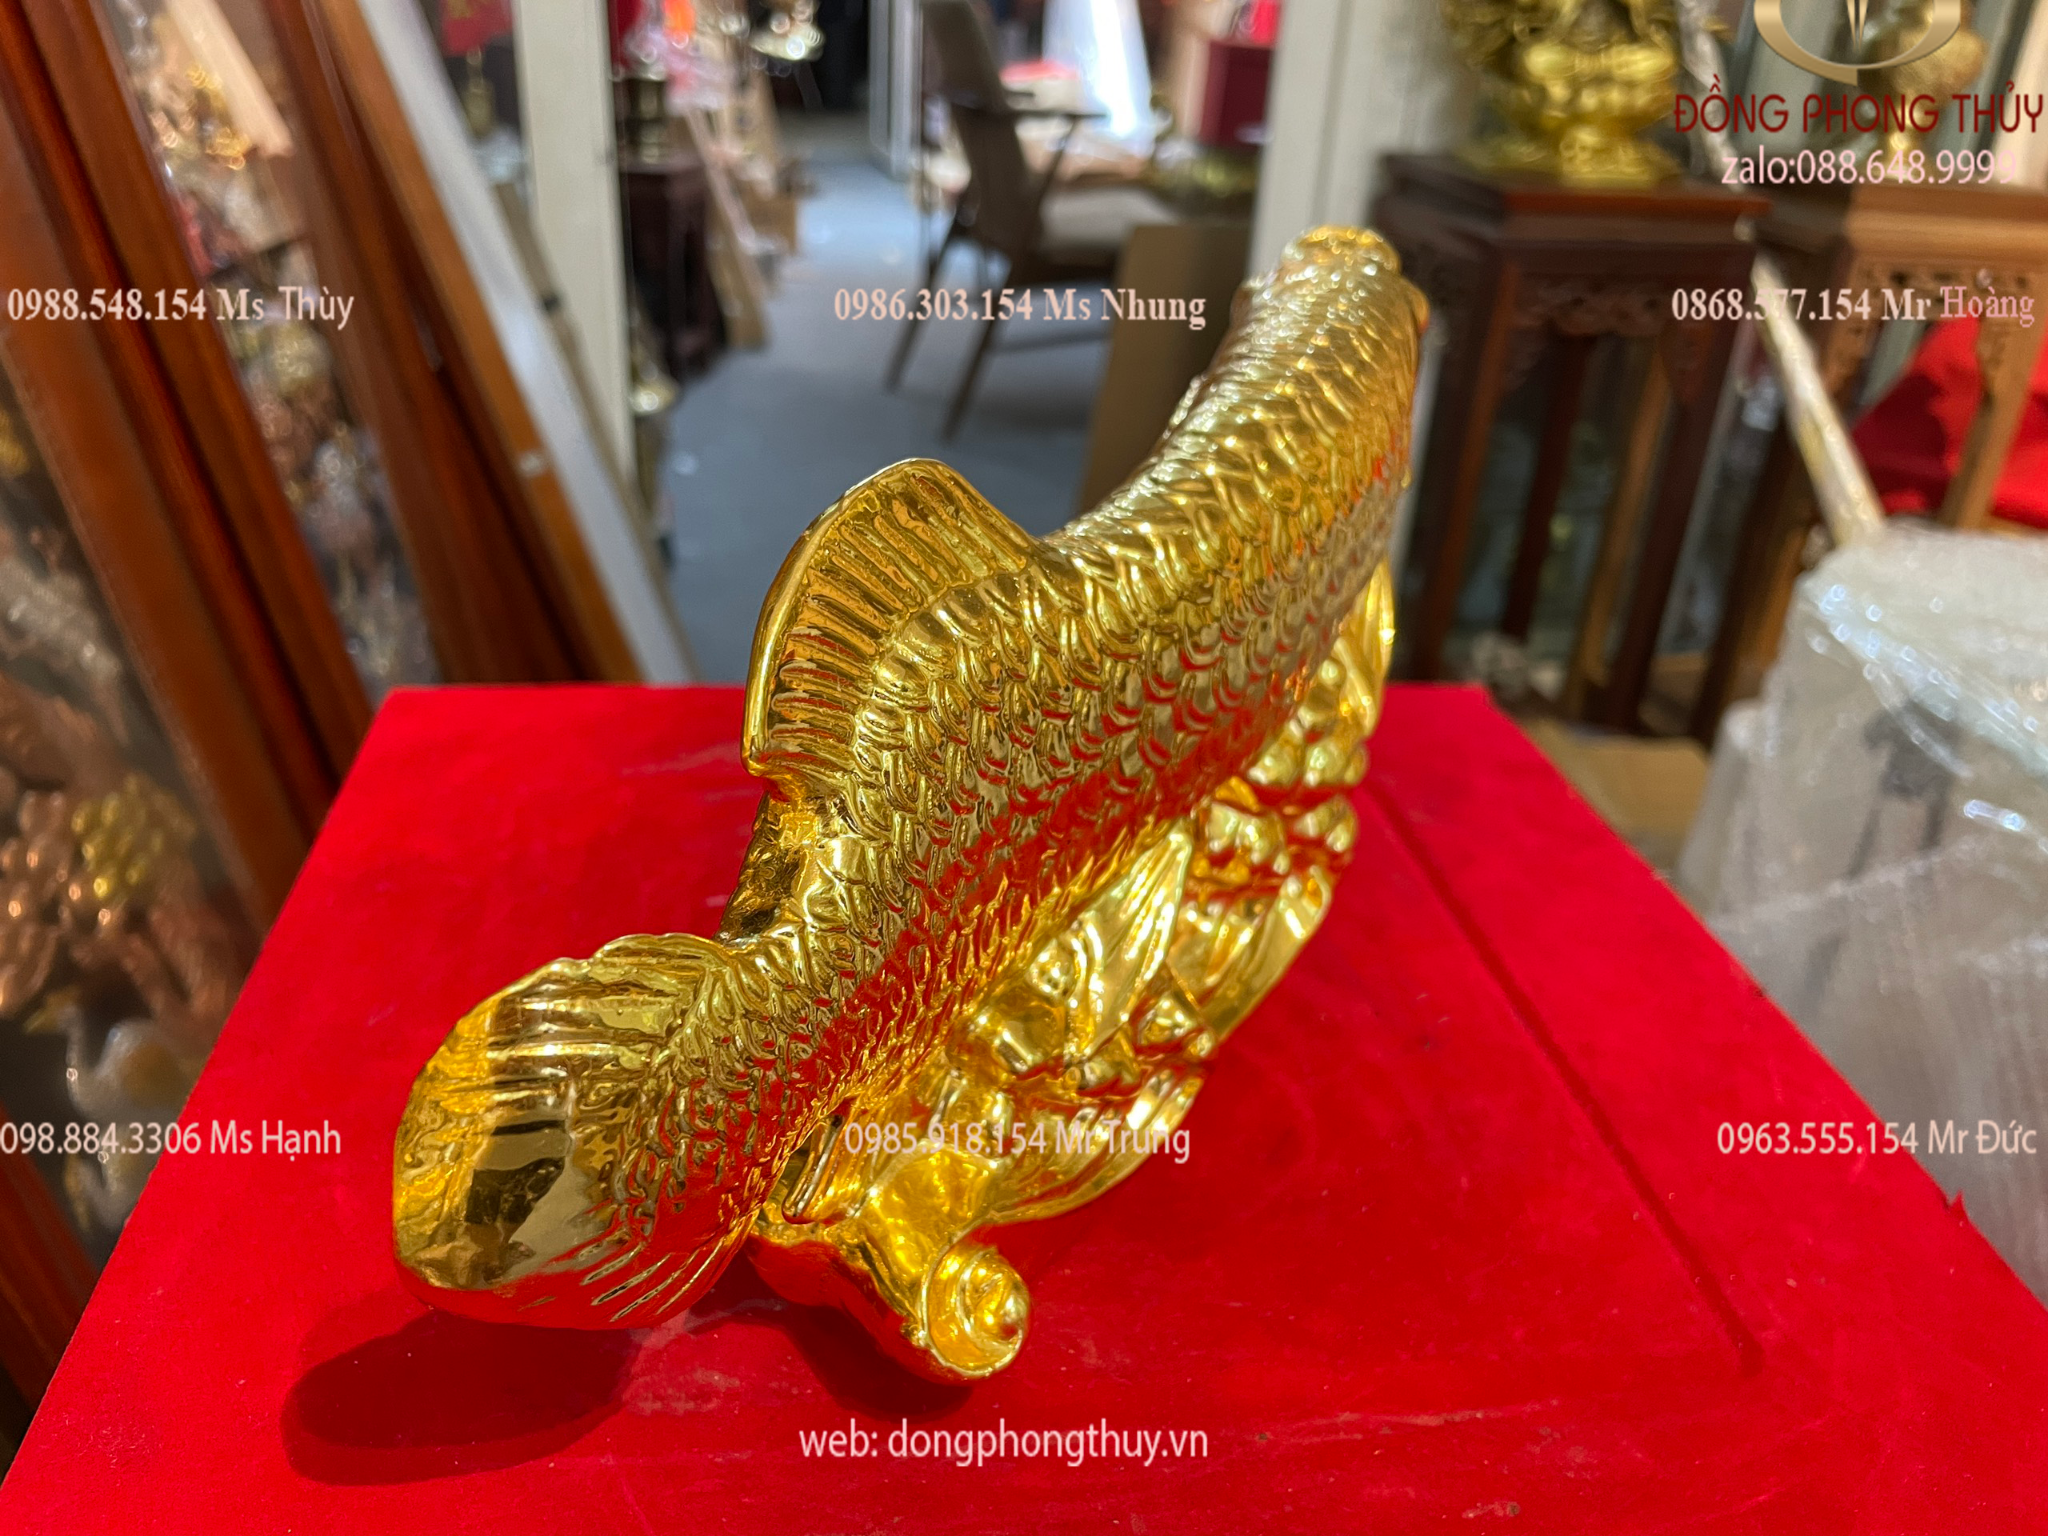 Quà tặng sếp: Tượng cá rồng bằng đồng dát vàng 24k